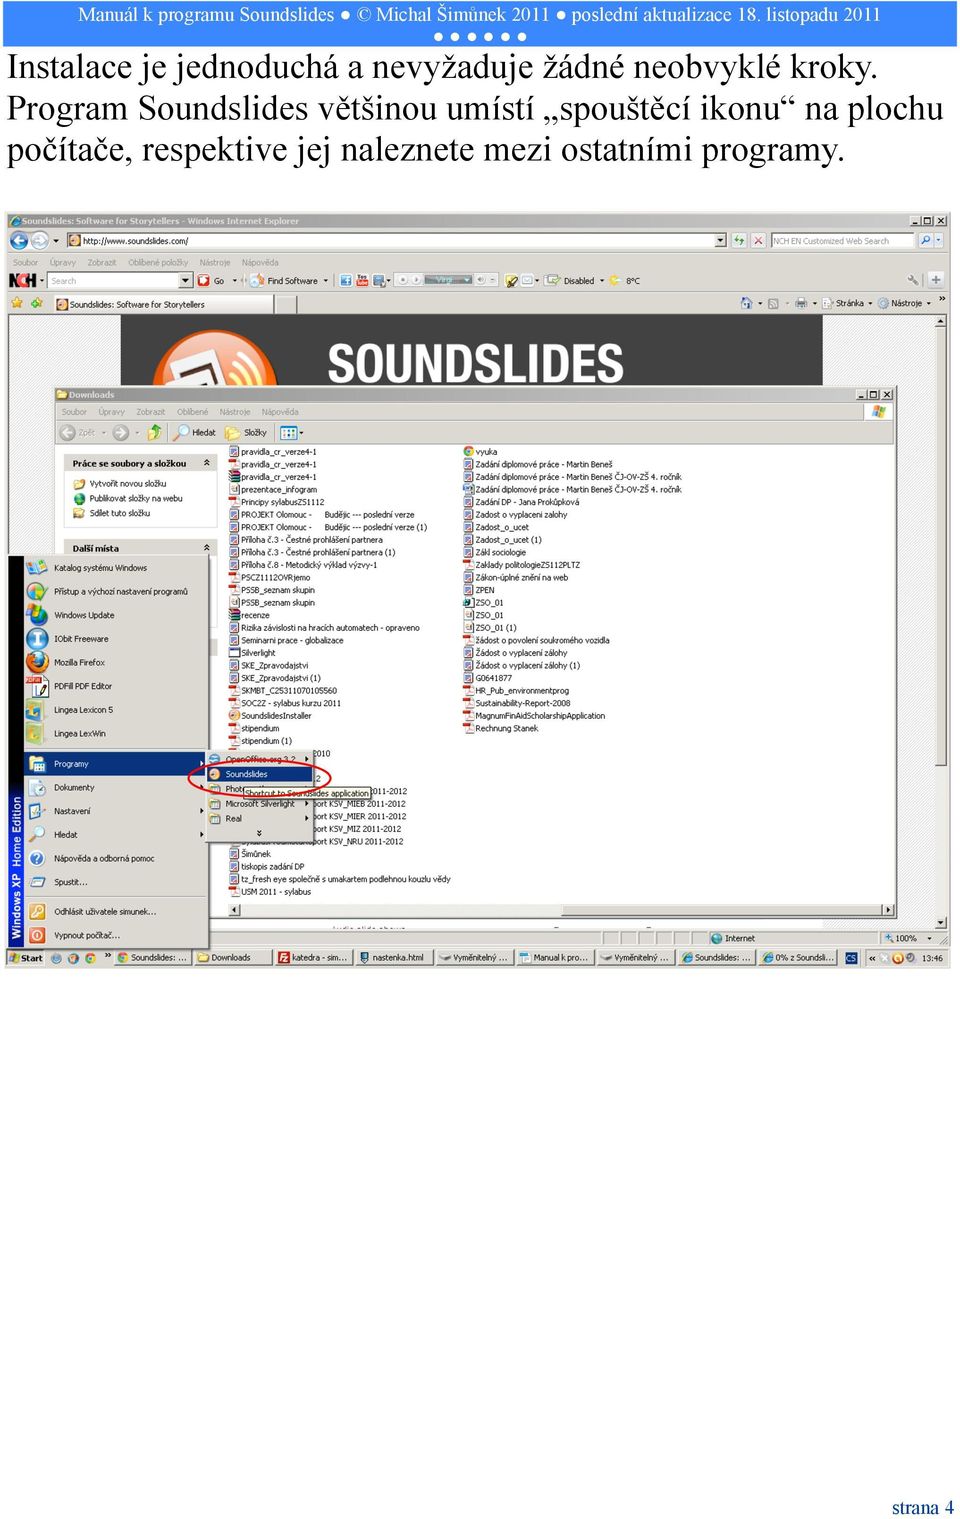 Program Soundslides většinou umístí spouštěcí